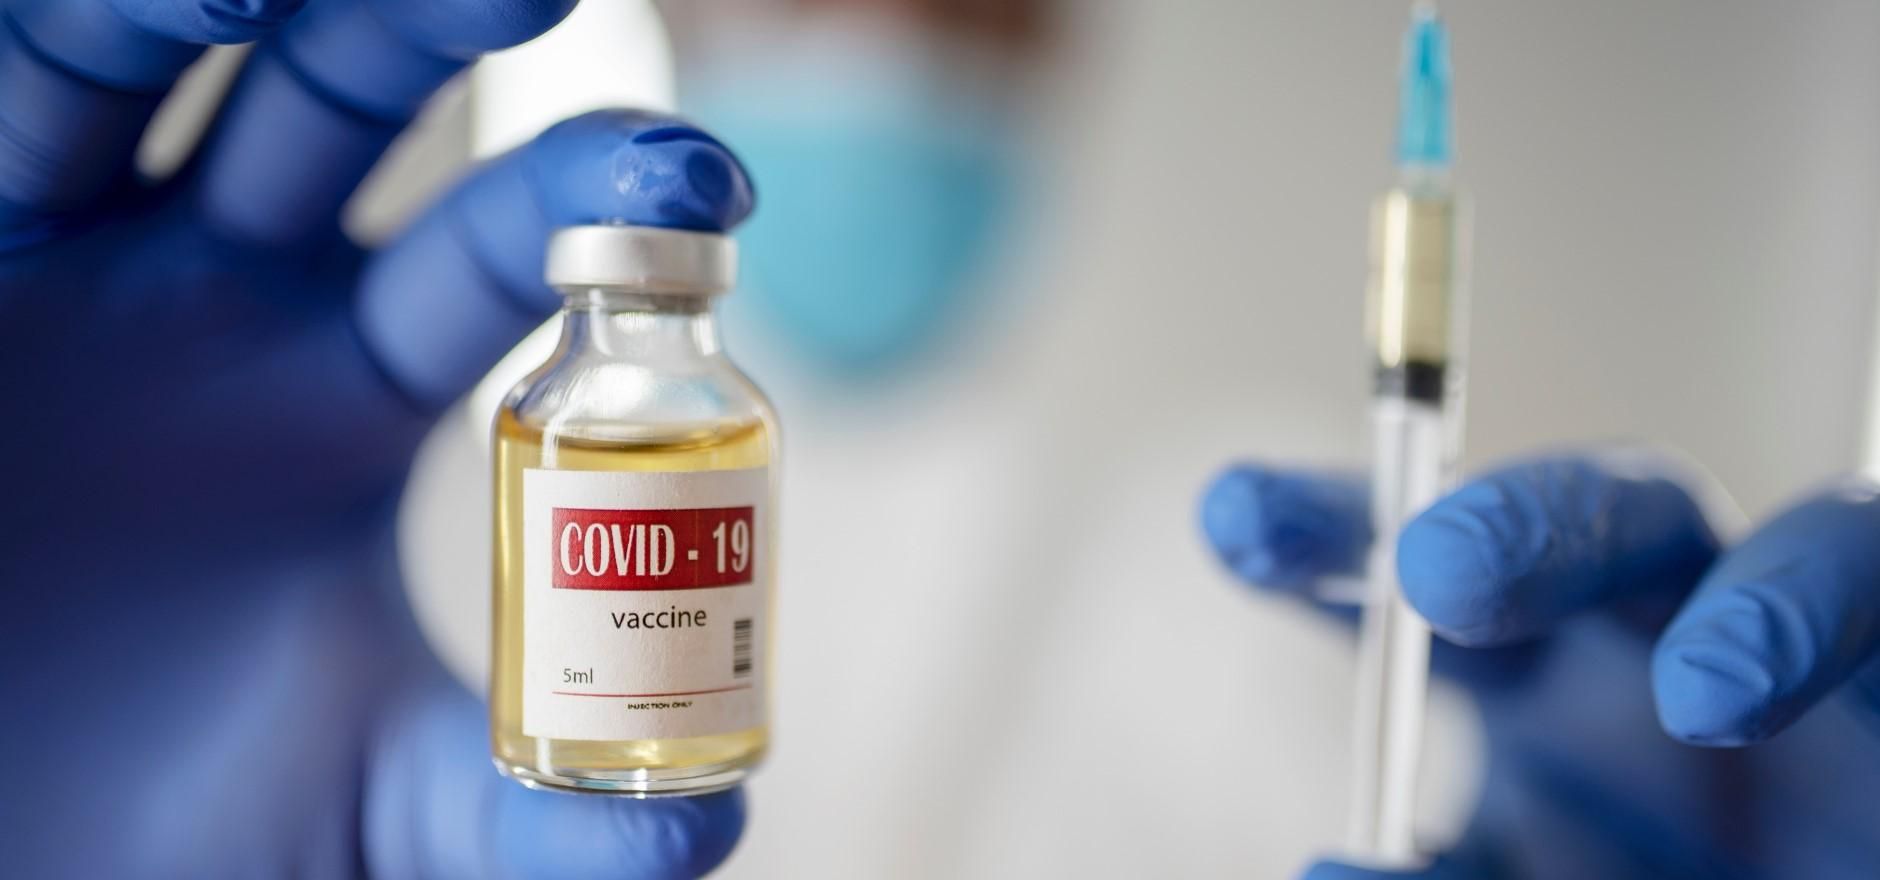 План вакцинации против COVID-19 прошел комитет Рады: что известно о предстоящей вакцинации